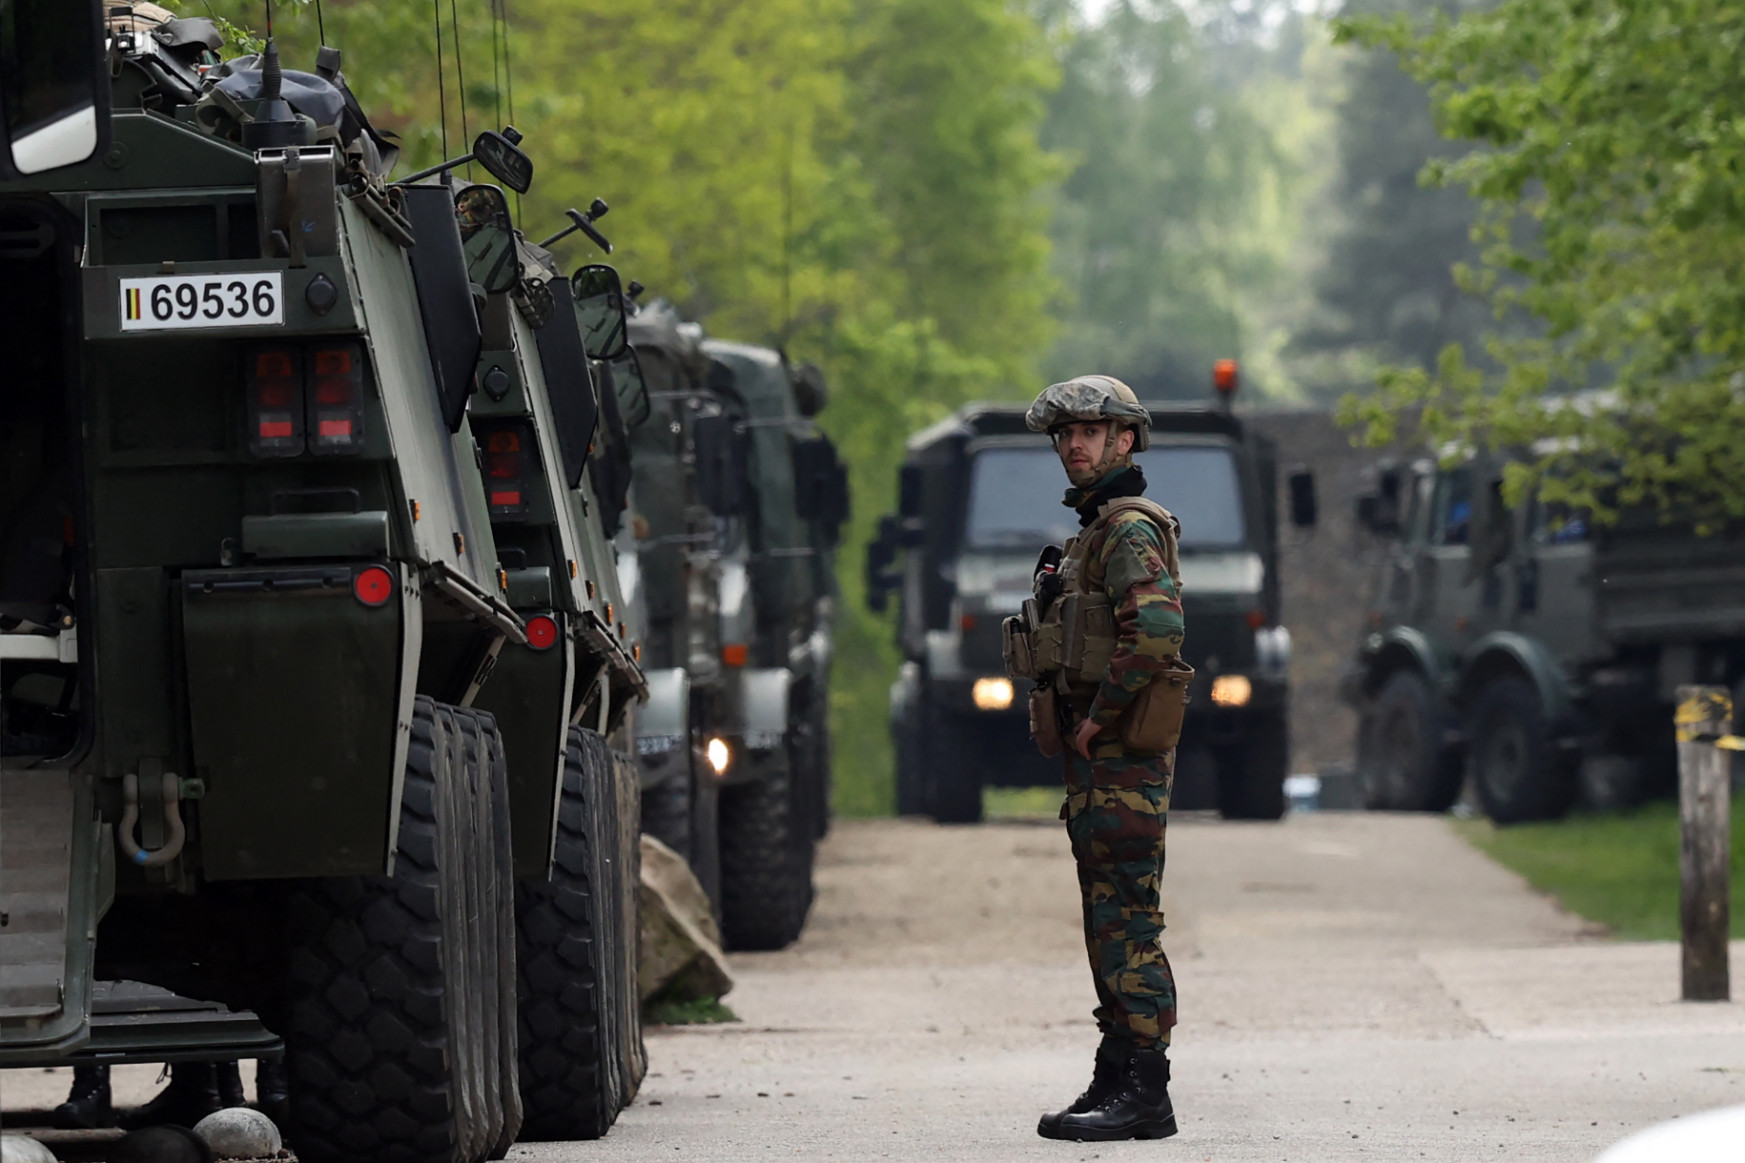 Hajtóvadászat Belgiumban: Két napja nem találják a felfegyverkezve menekülő szélsőjobboldali katonát